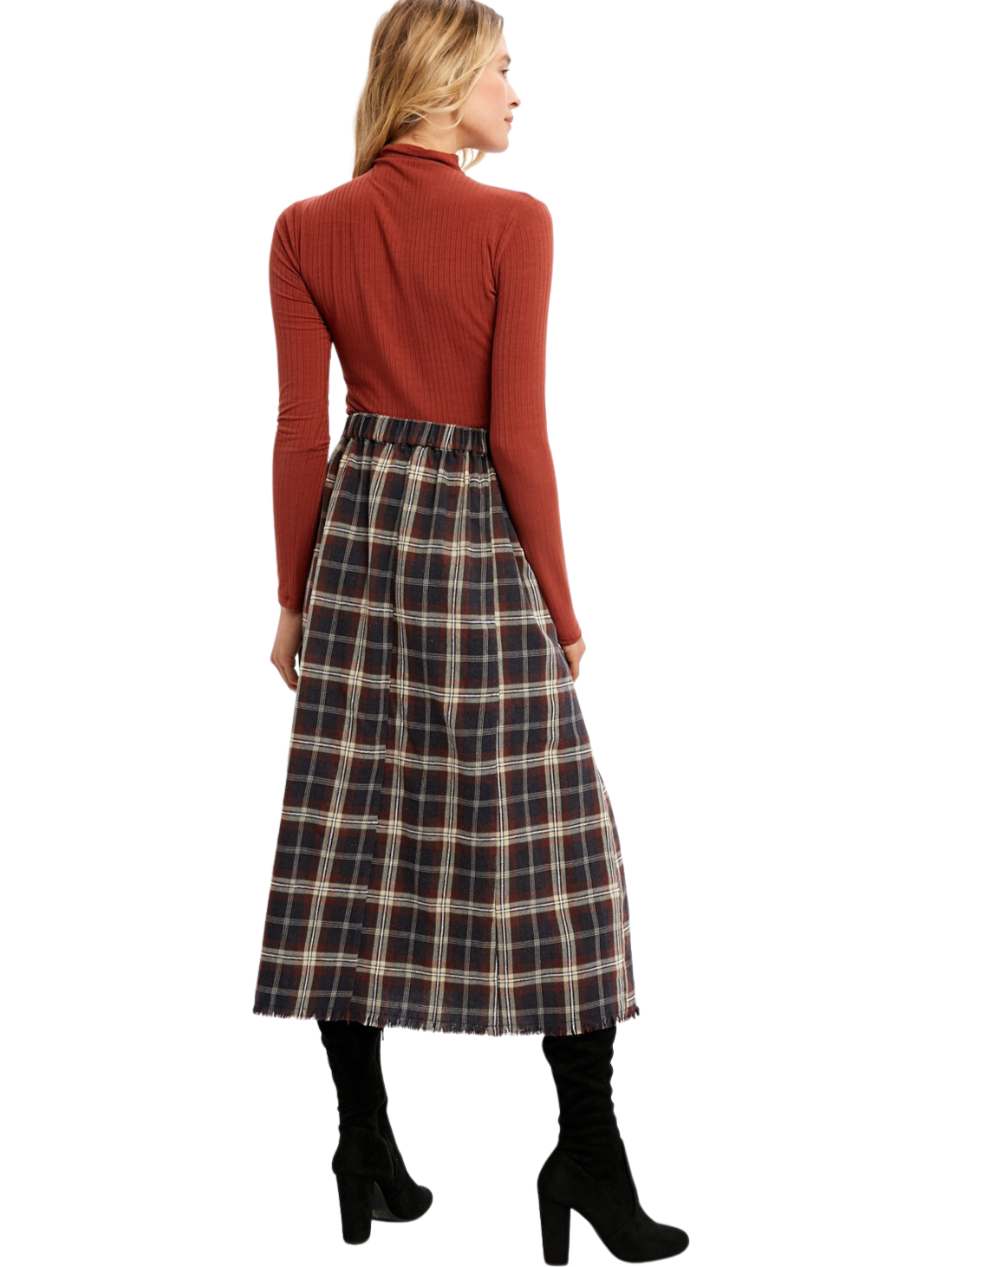 back of plaid skirt